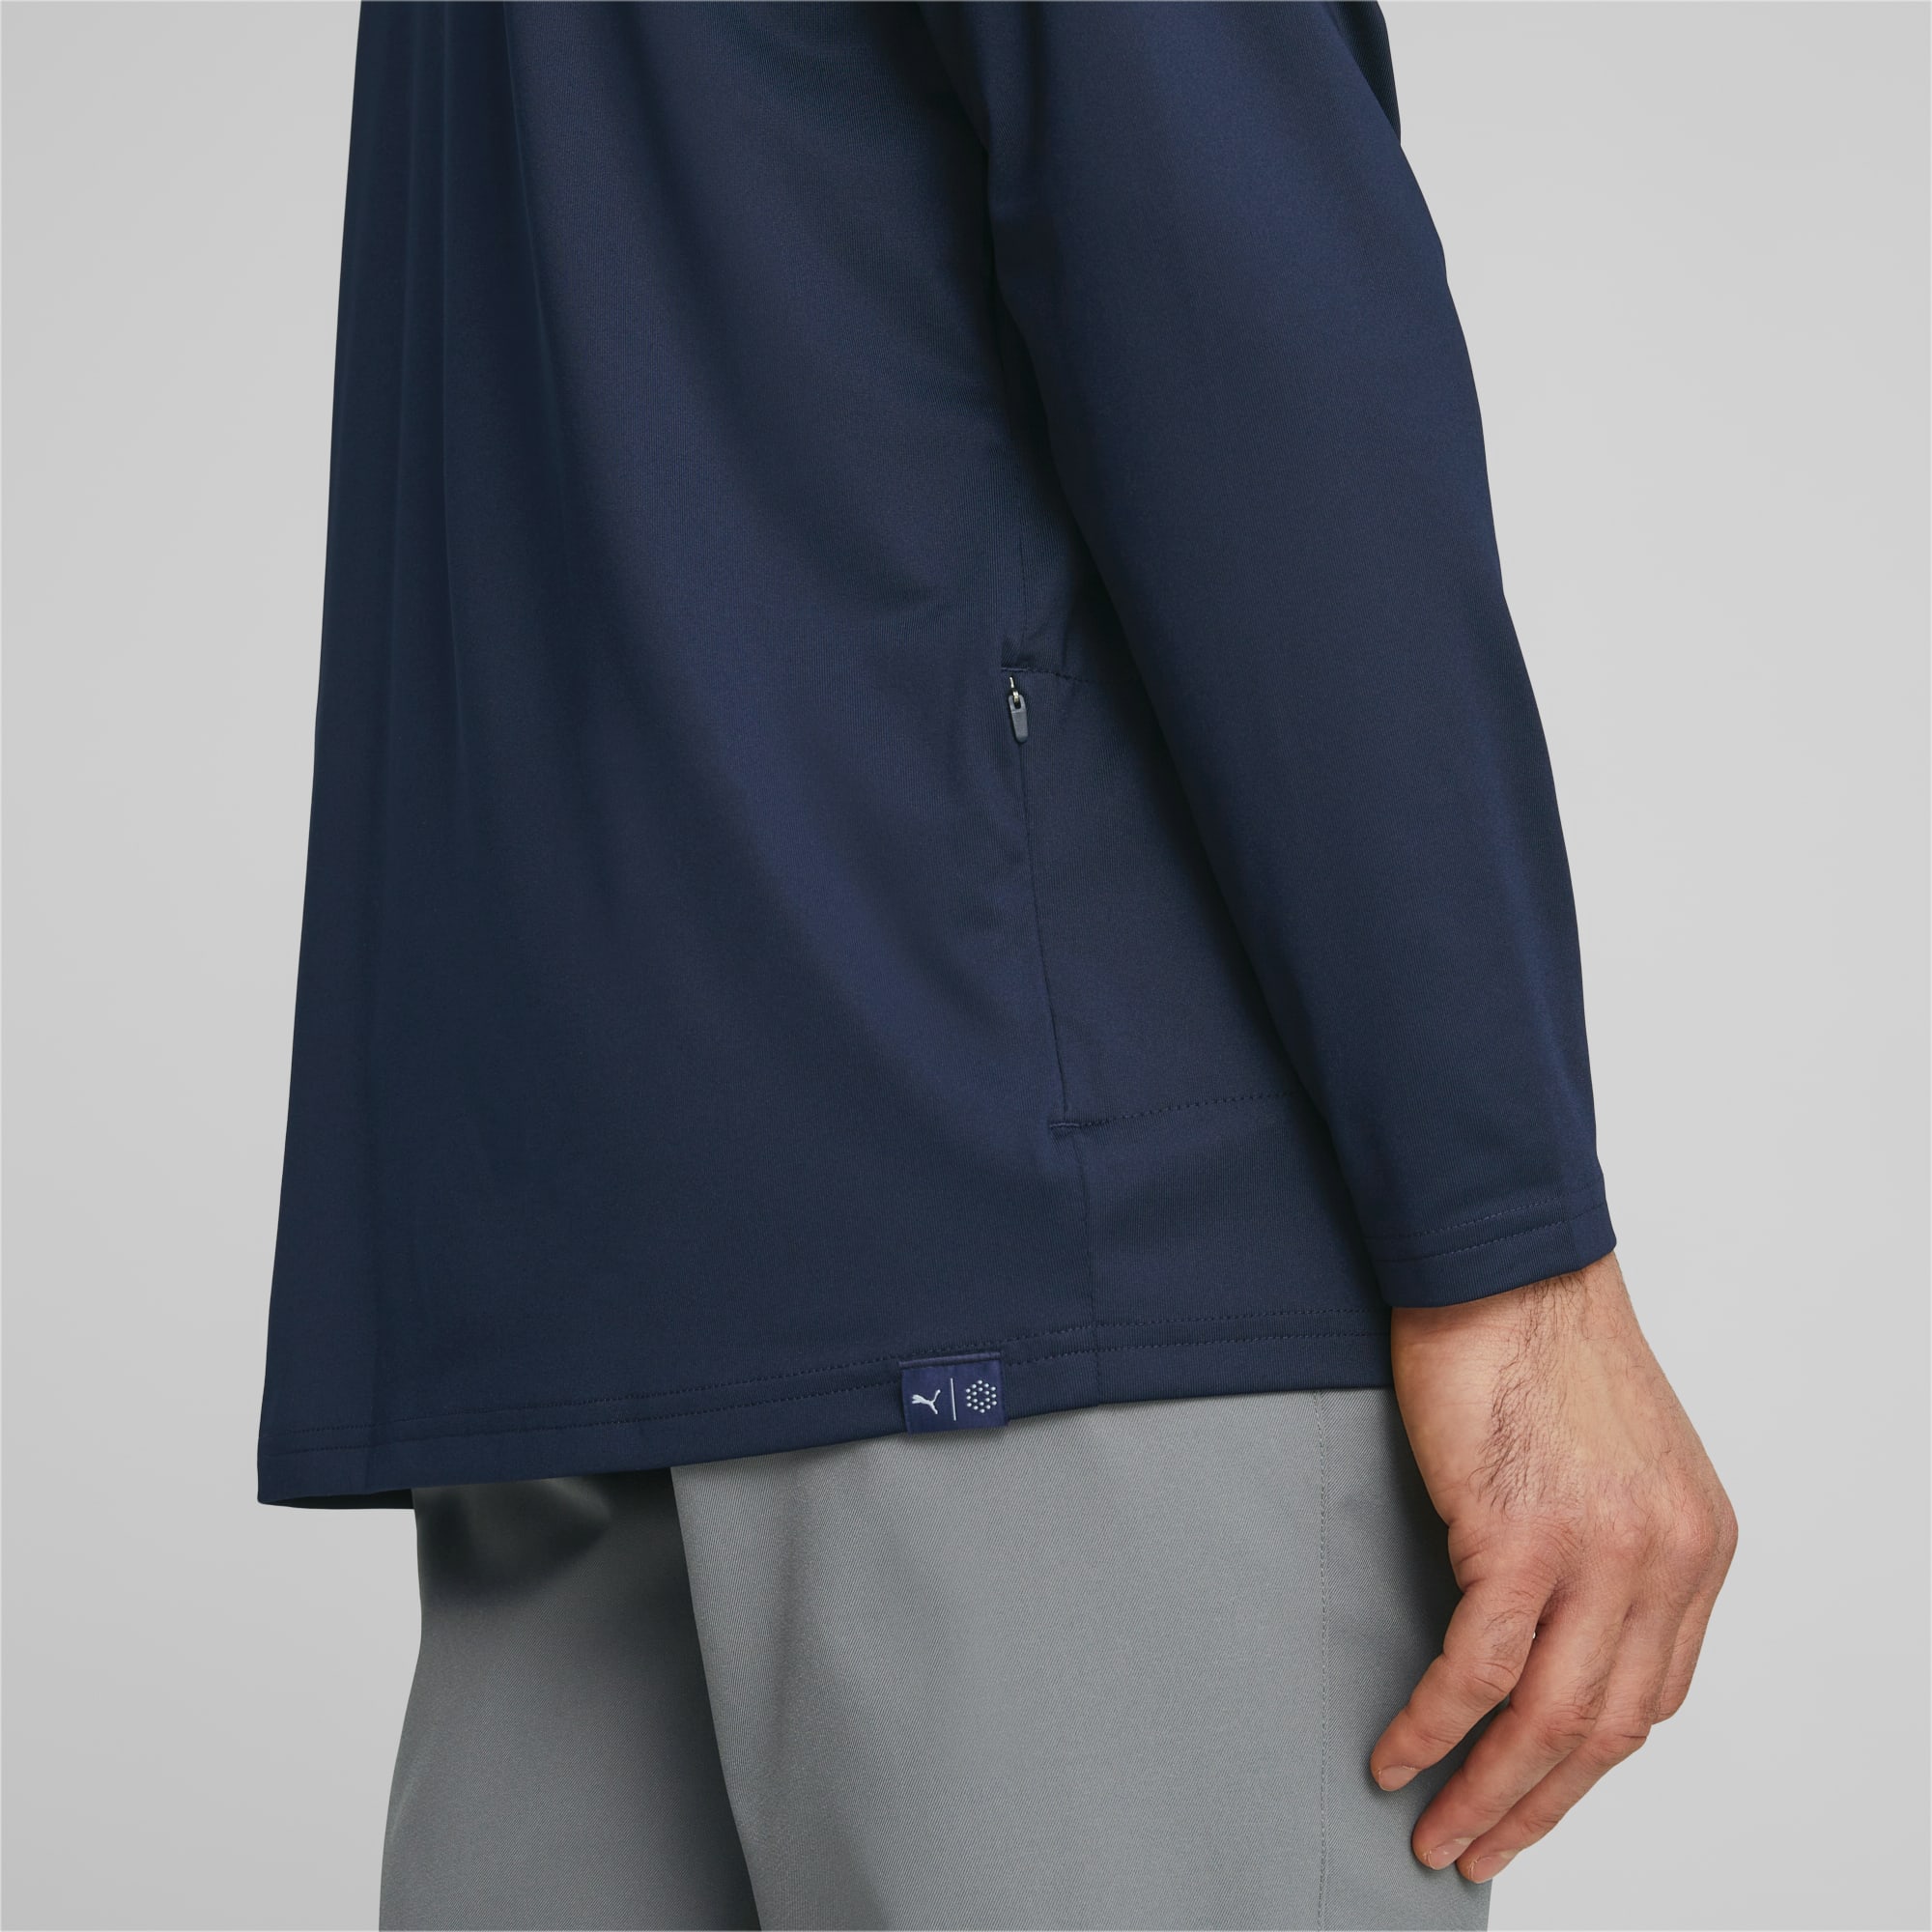 PUMA Mattr Colorblock Golfhoodie Herren, Blau/Weiß, Größe: XL, Kleidung